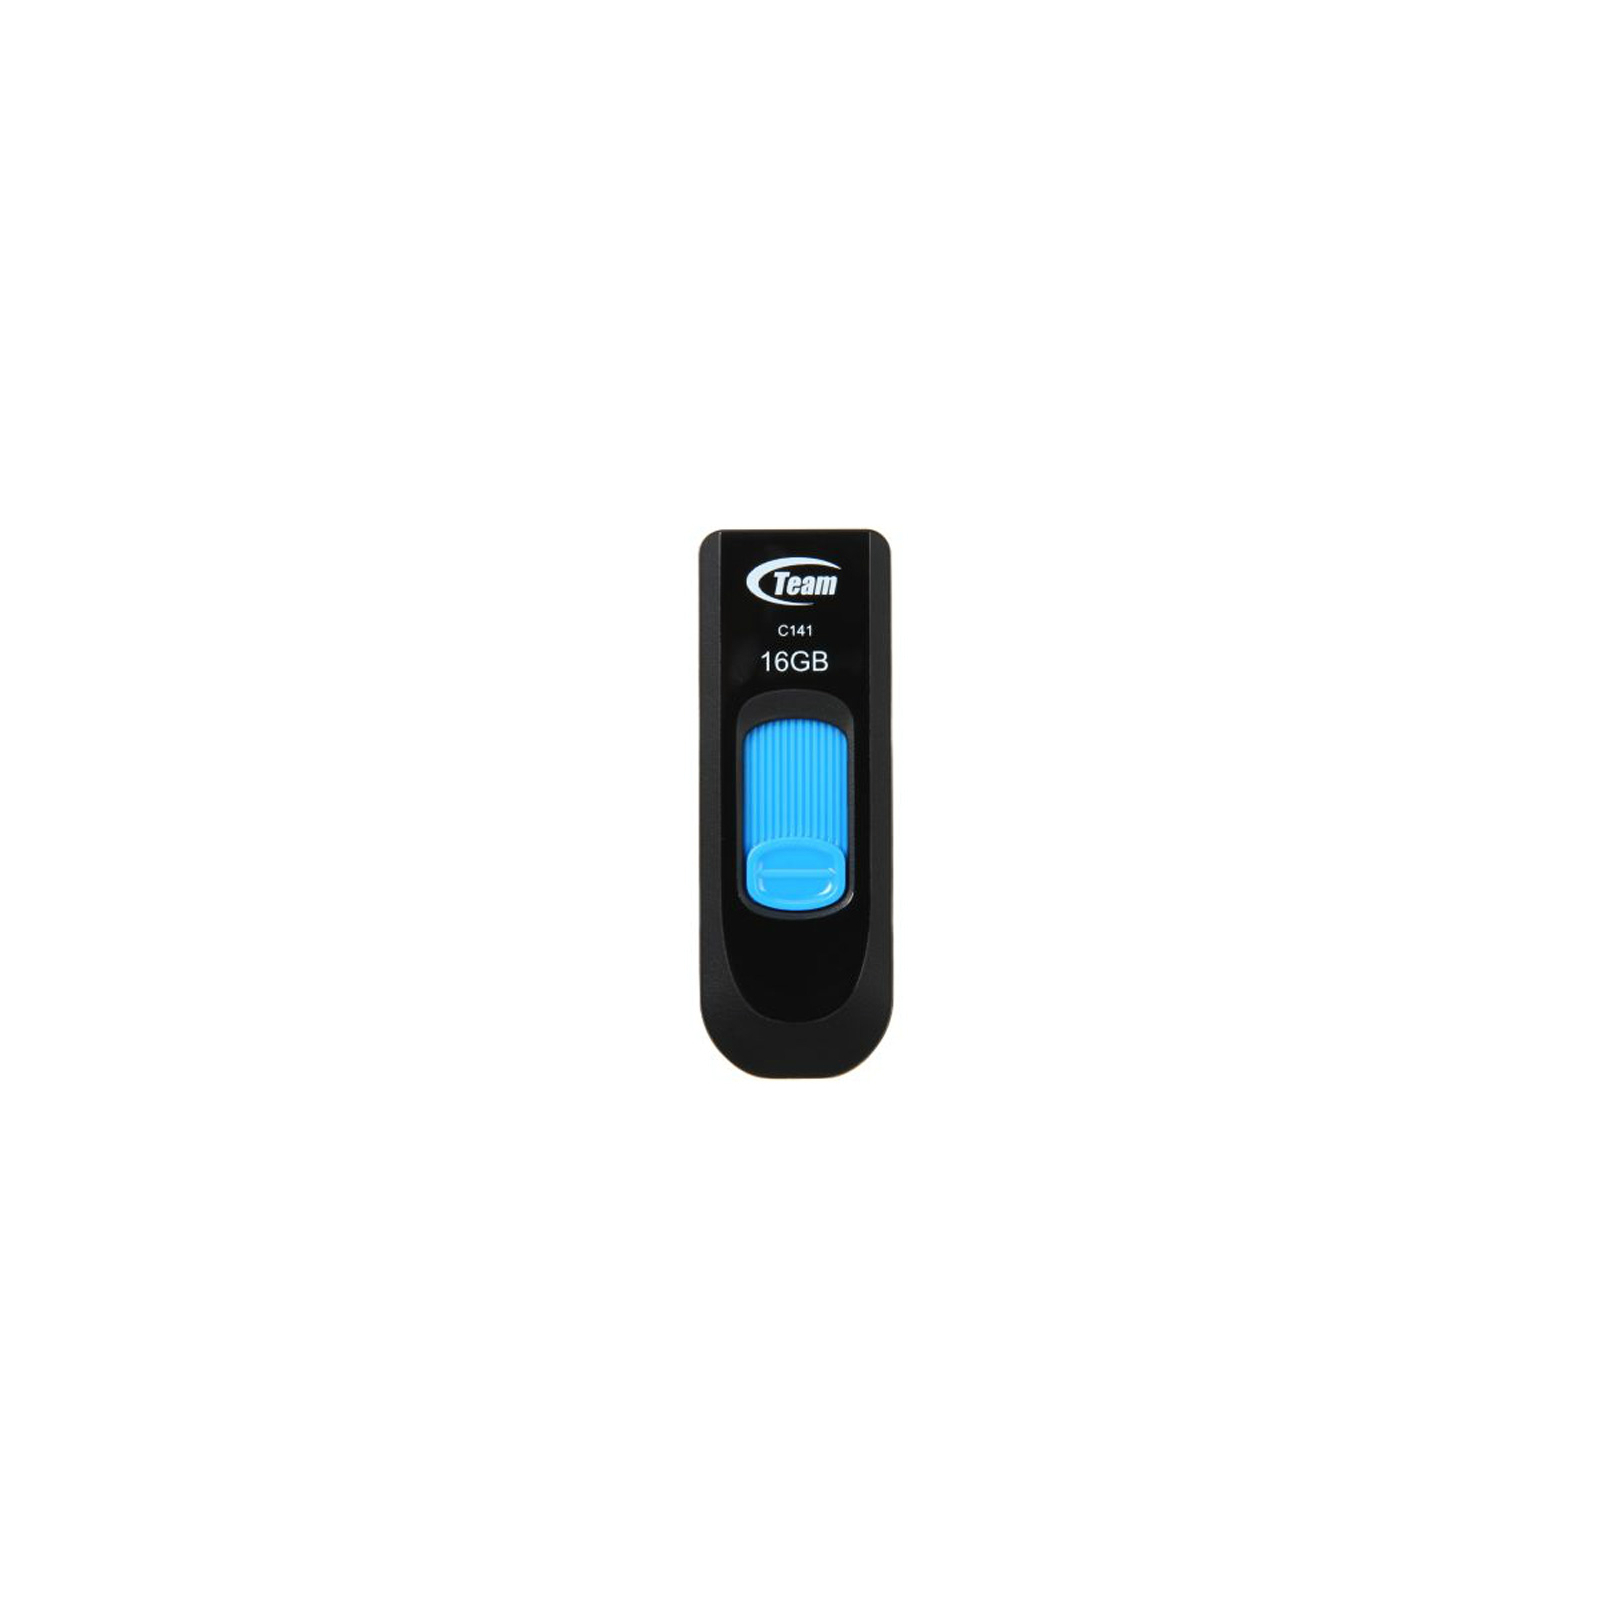 USB флеш накопитель Team 4GB C141 Blue USB 2.0 (TC1414GL01)